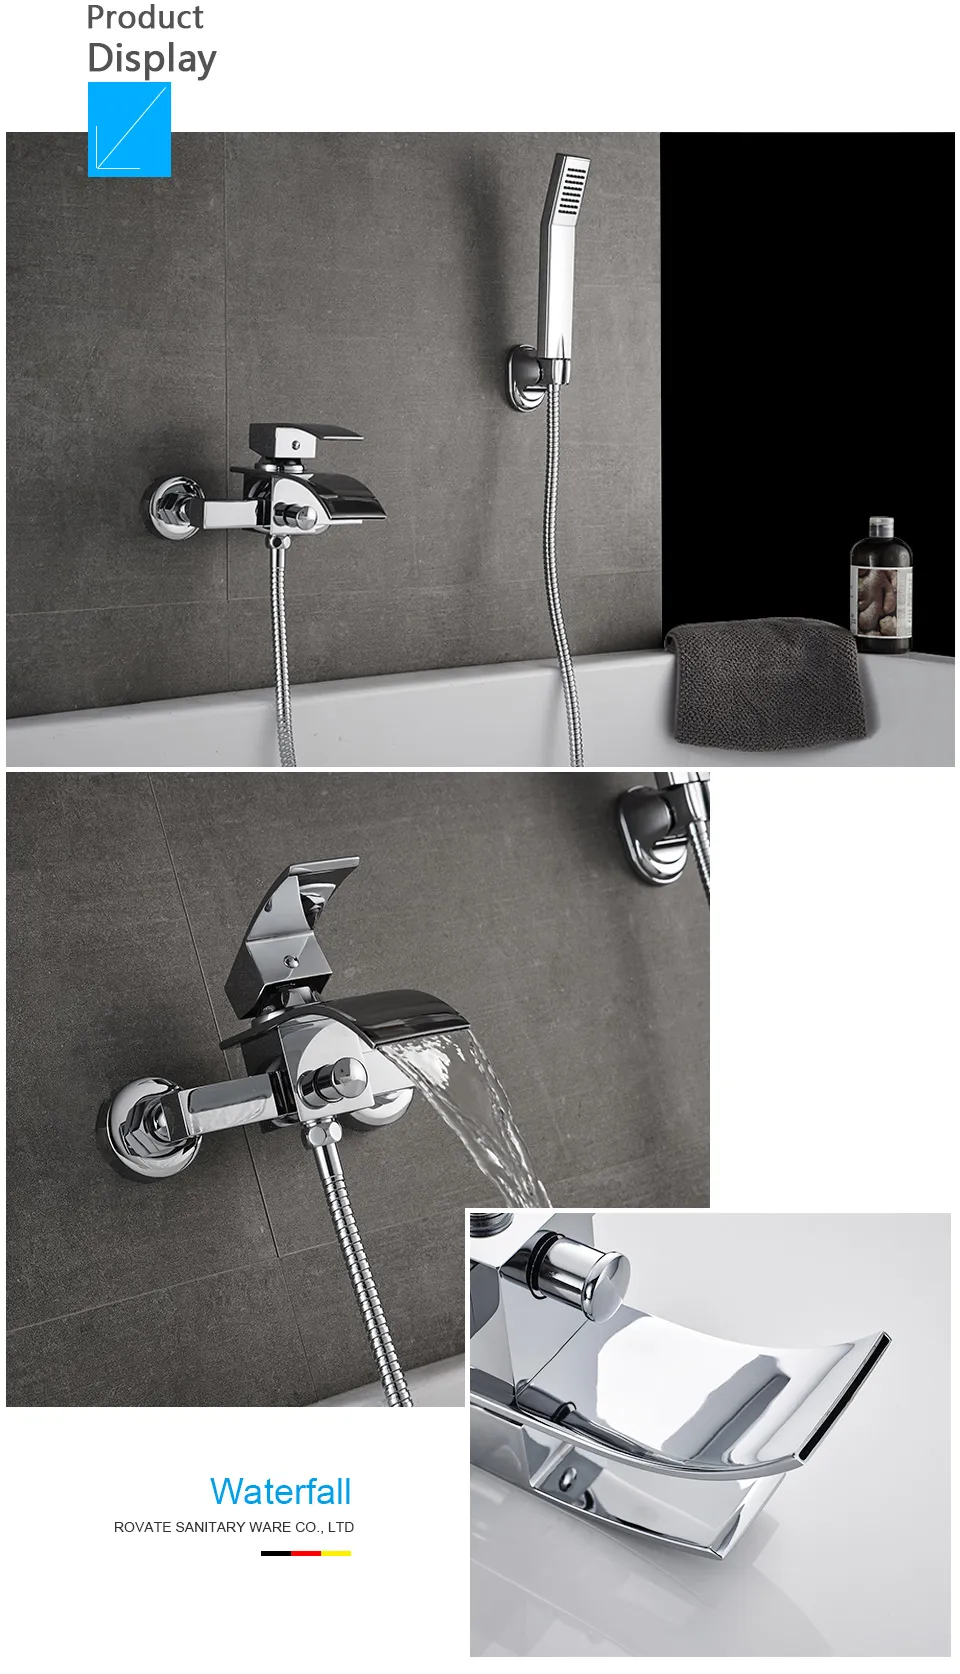 バスタブのシャワーセットの壁に取り付けられた滝風呂の蛇口、バスルームの寒さとホットミキサータップ真鍮クロム